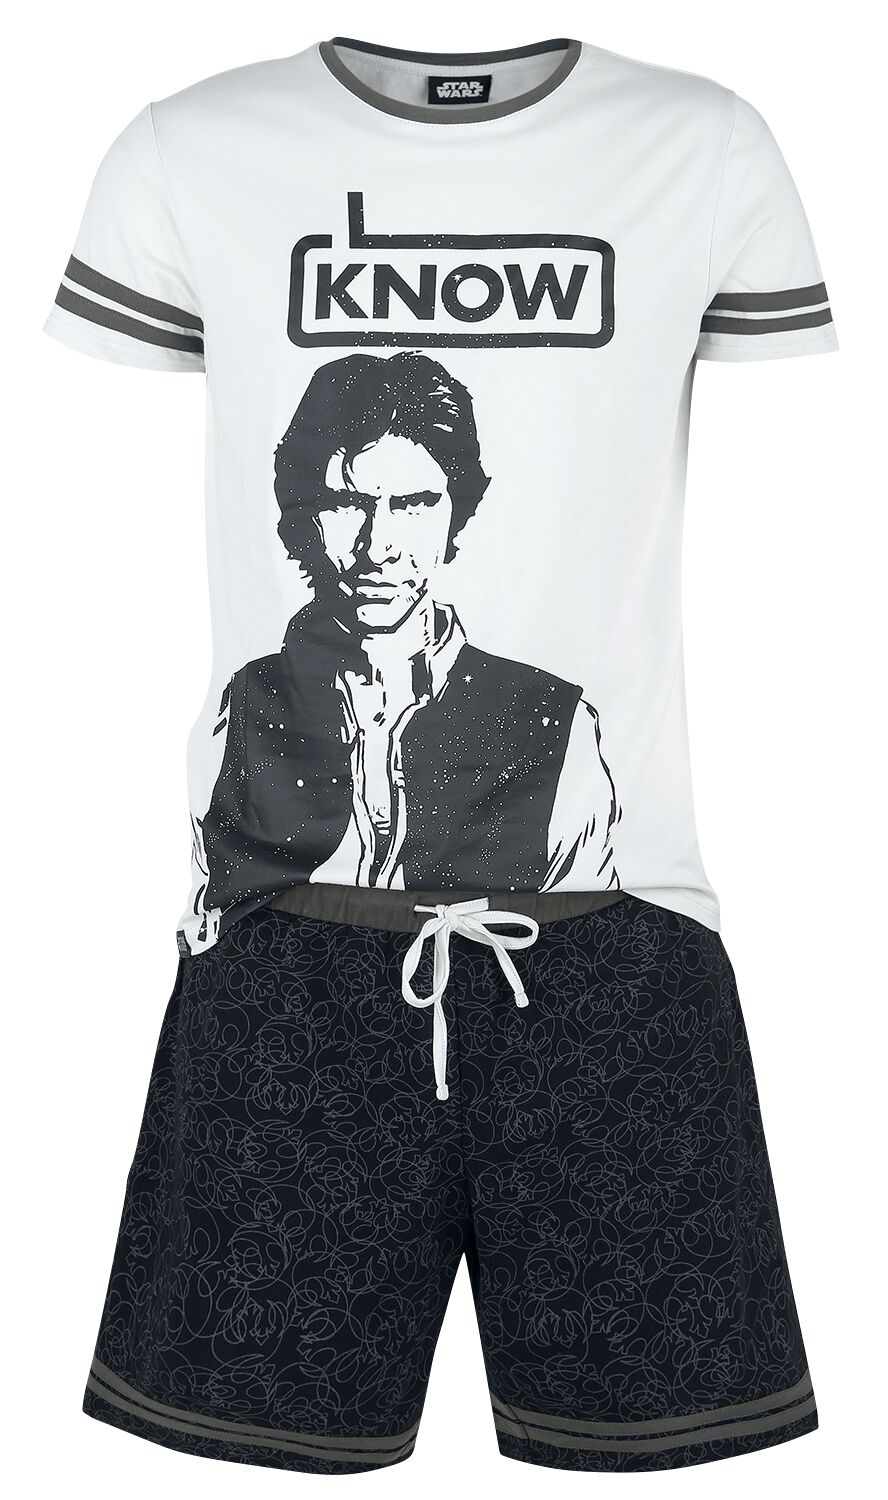 Star Wars Han Solo - I Know Schlafanzug grau schwarz in XL